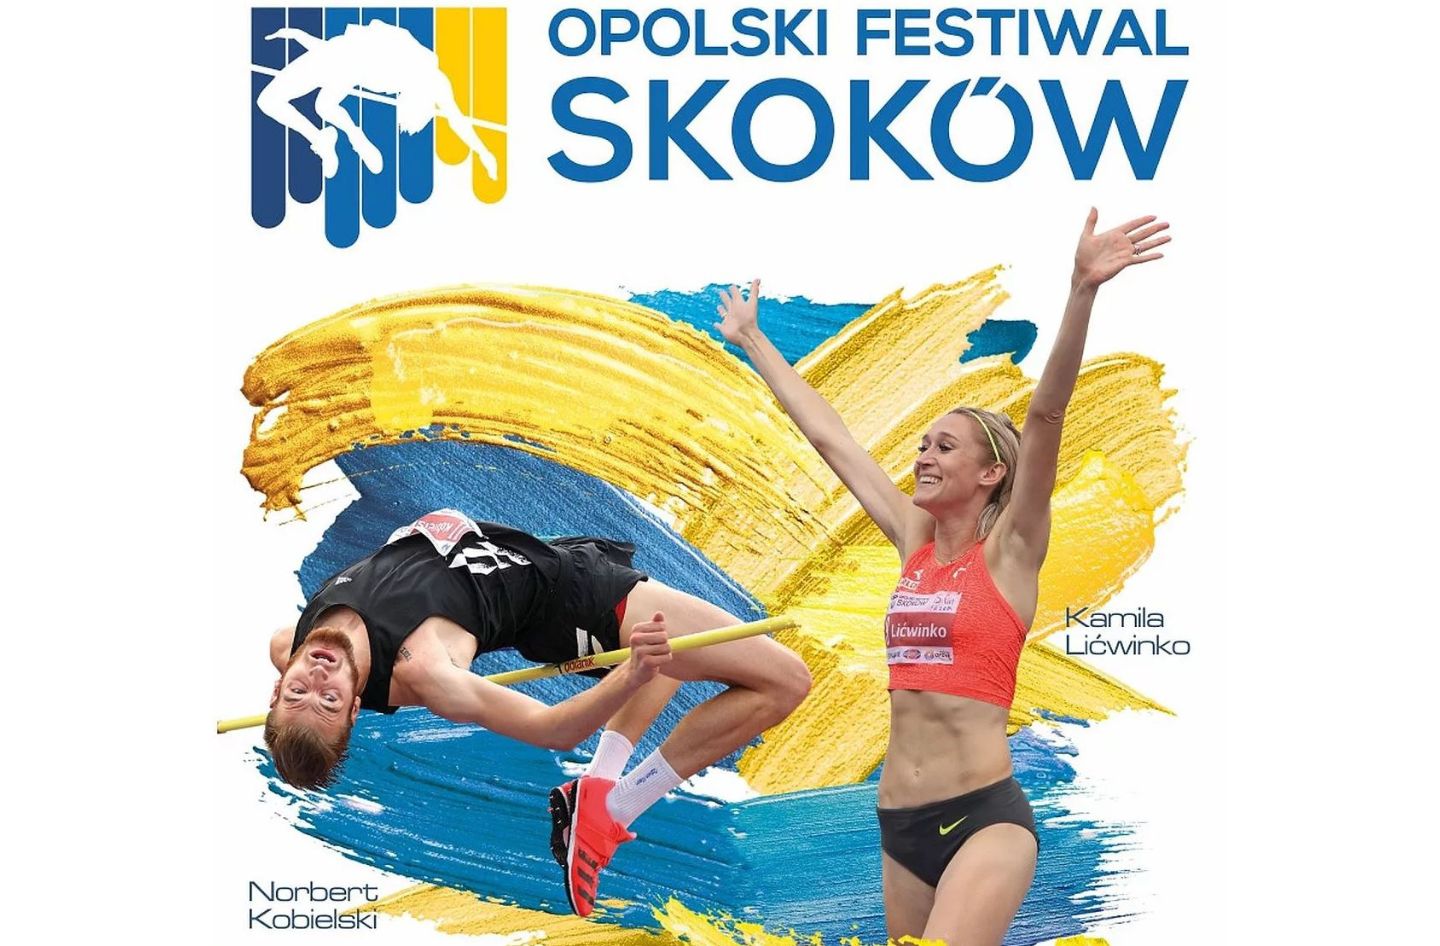 opolski_festiwal_skokow